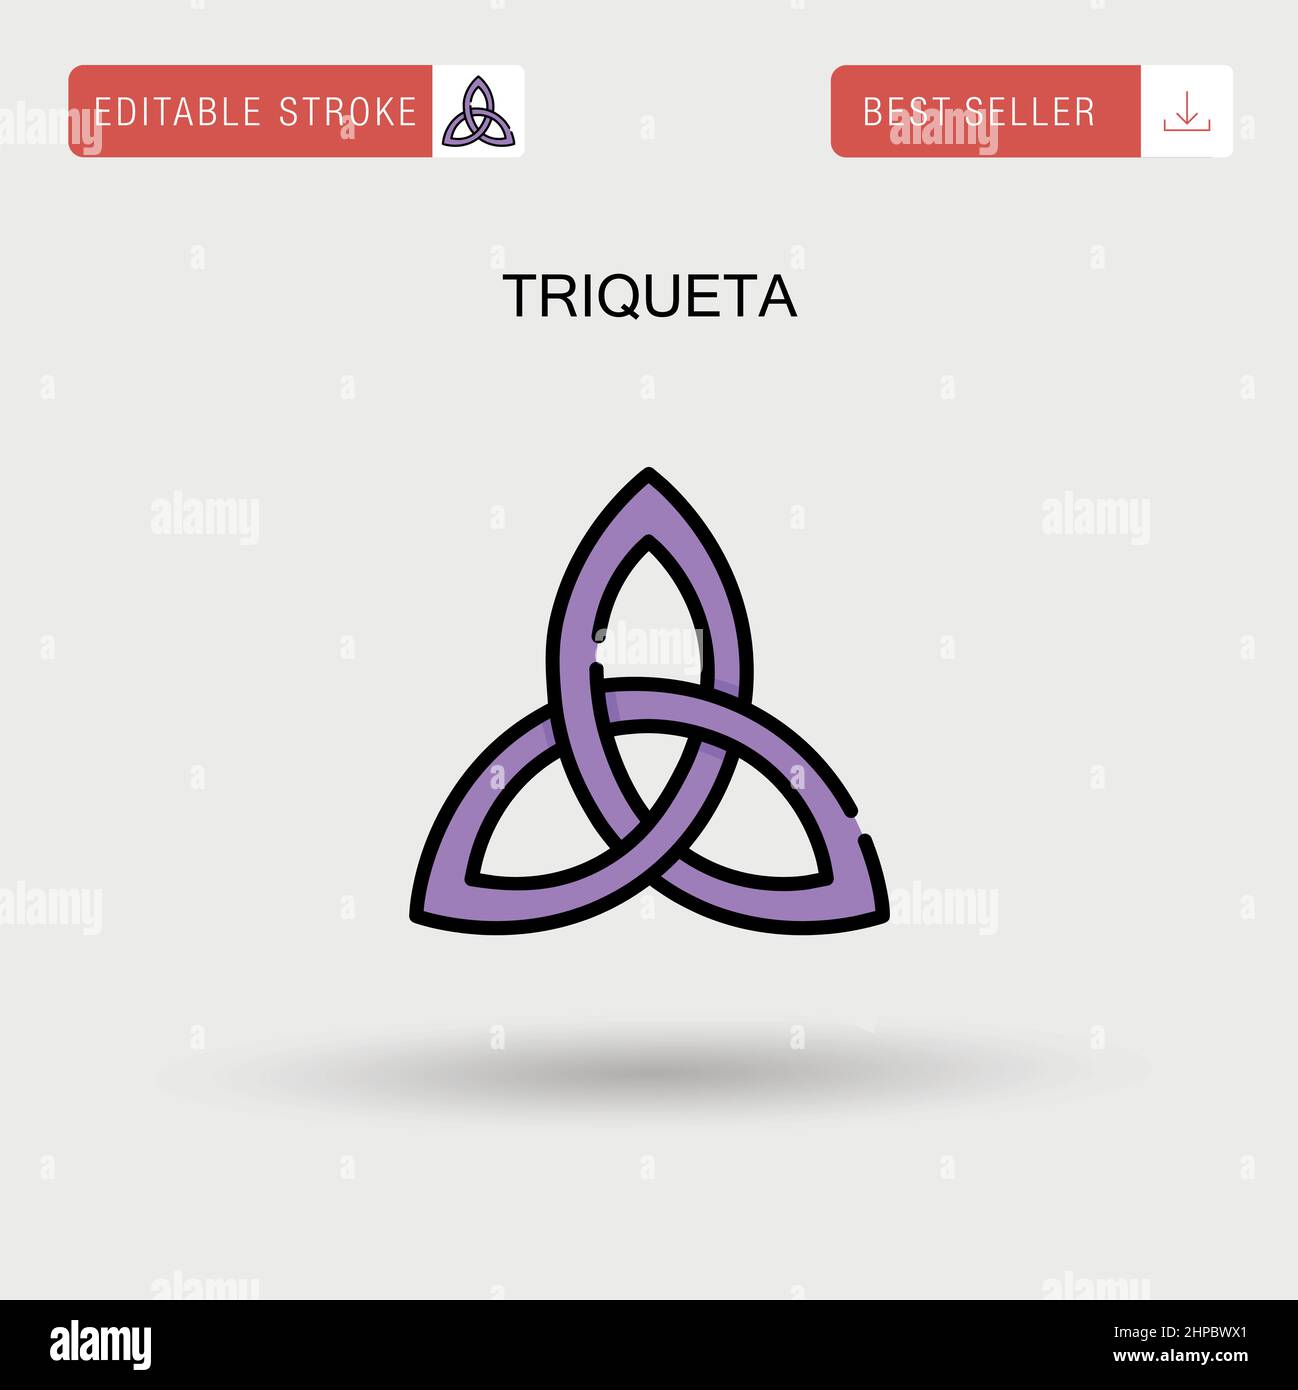 Triqueta Simple vector icon. Stock Vector